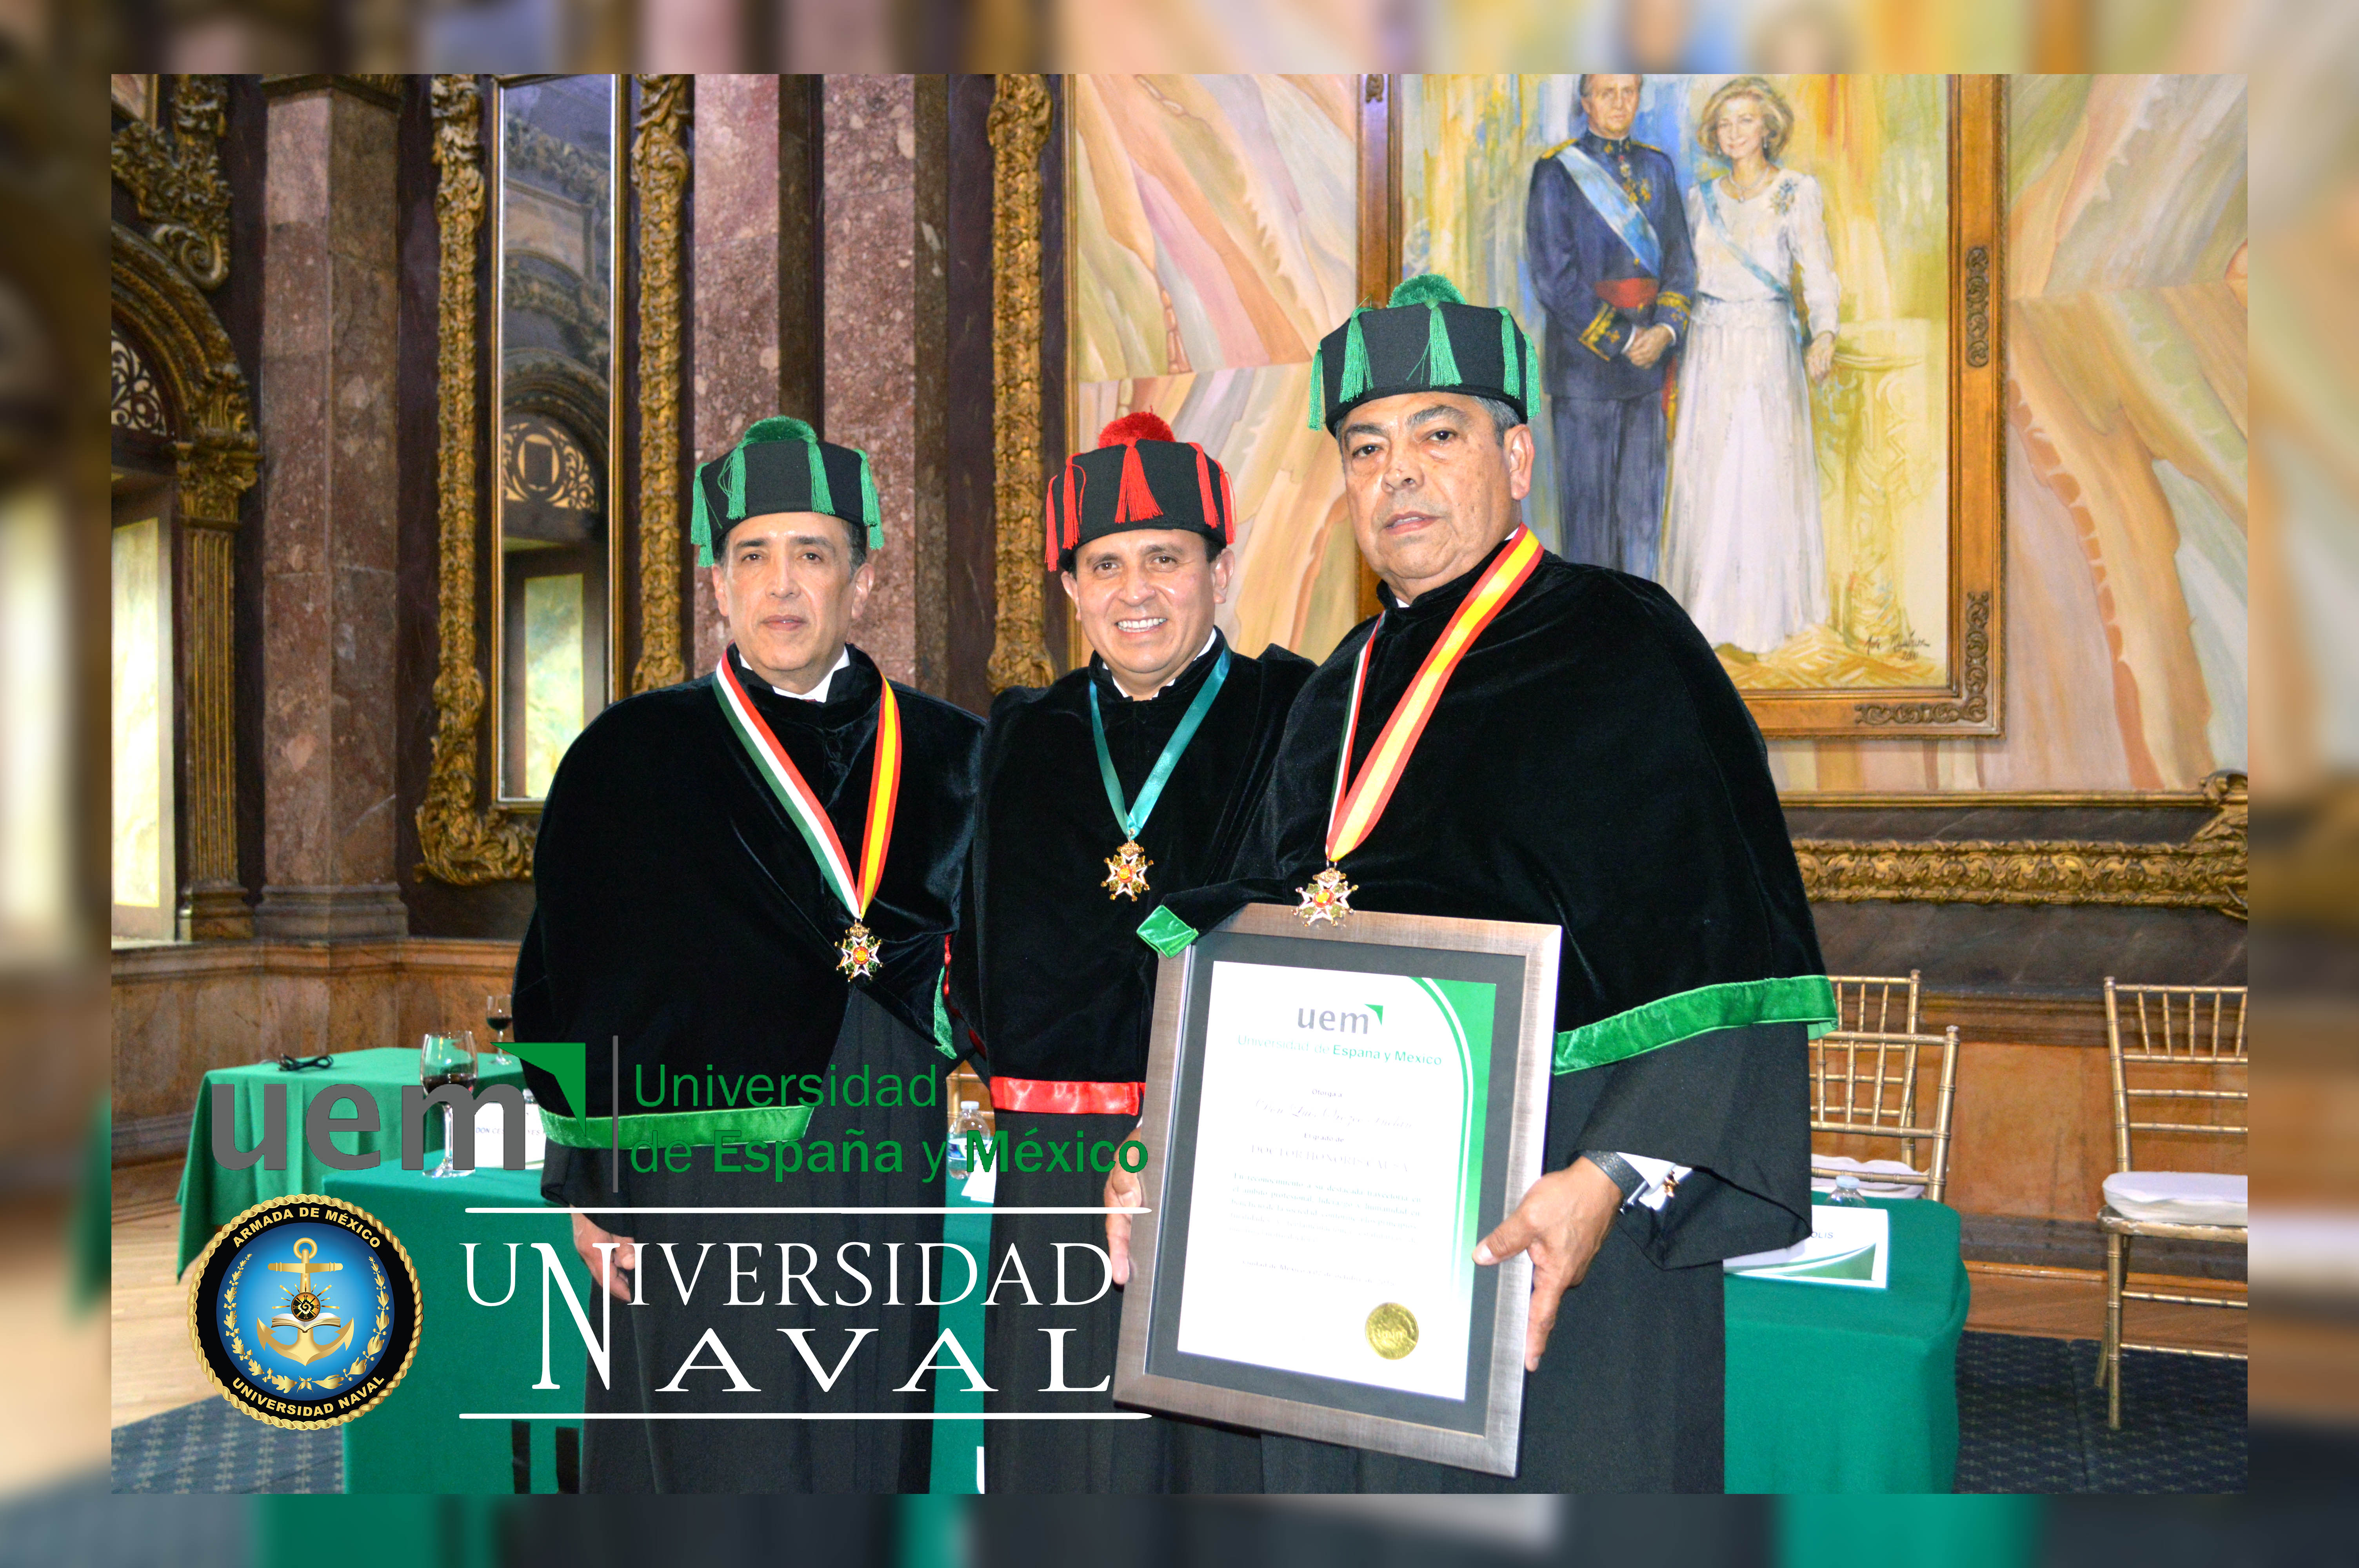 Rector de la Universidad Naval envestido como Doctor Honoris Causa por parte de la Universidad de España y México